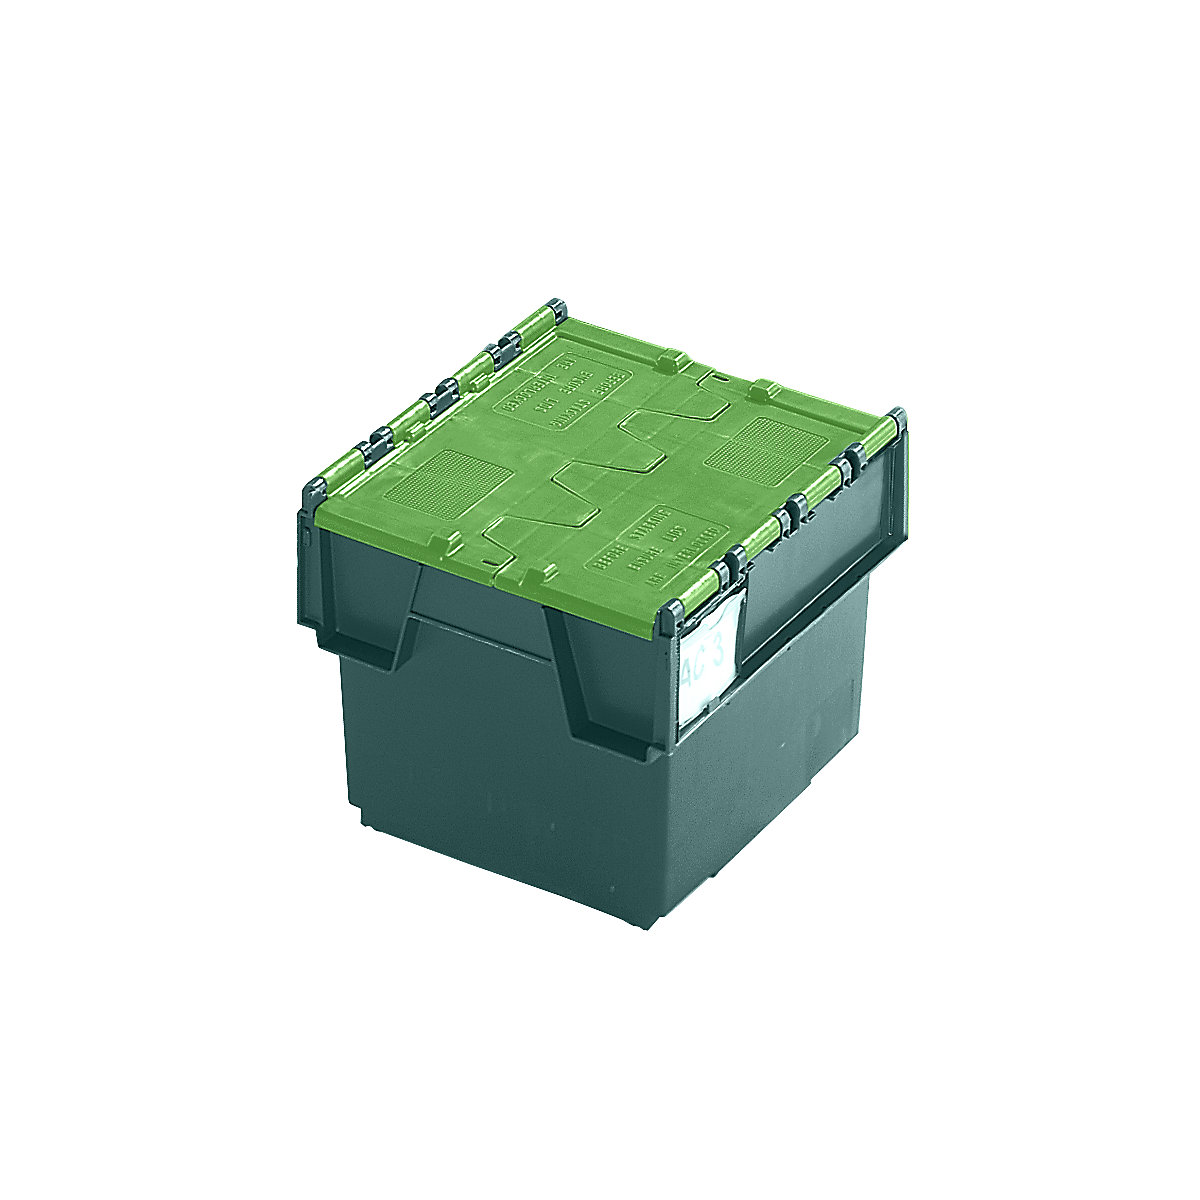 Pojemnik wielokrotnego użytku do ustawiania w stos ze składaną pokrywą, poj. 20 l, dł. x szer. x wys. 400 x 300 x 252 mm, zielony, od 10 szt.